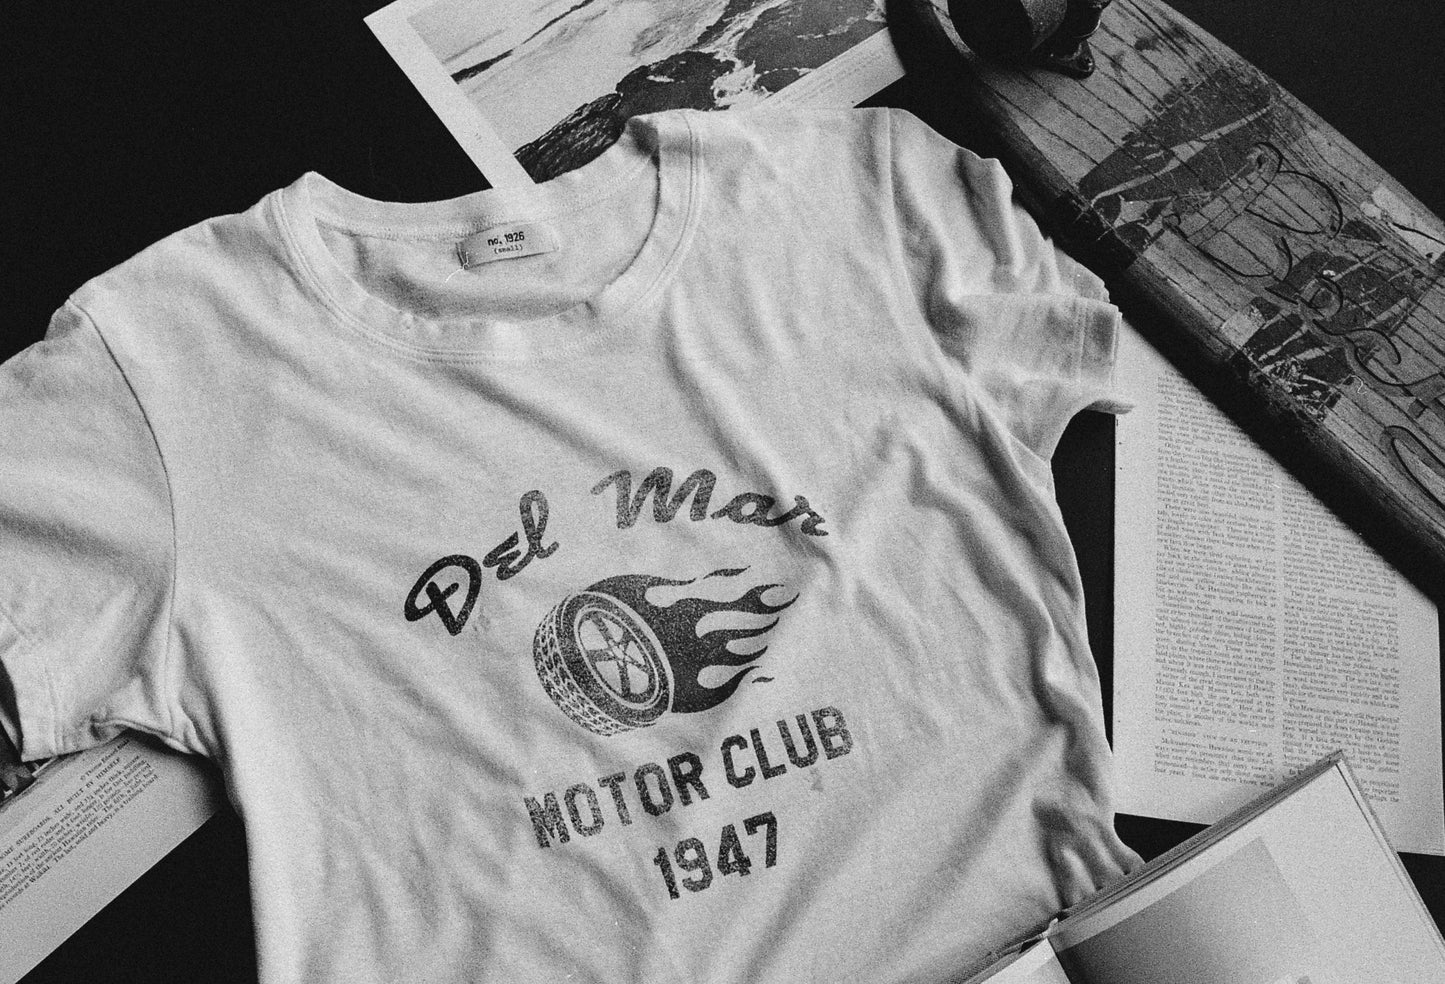 
                  
                    The "del mar motor club" tee Tee Number 1926   
                  
                